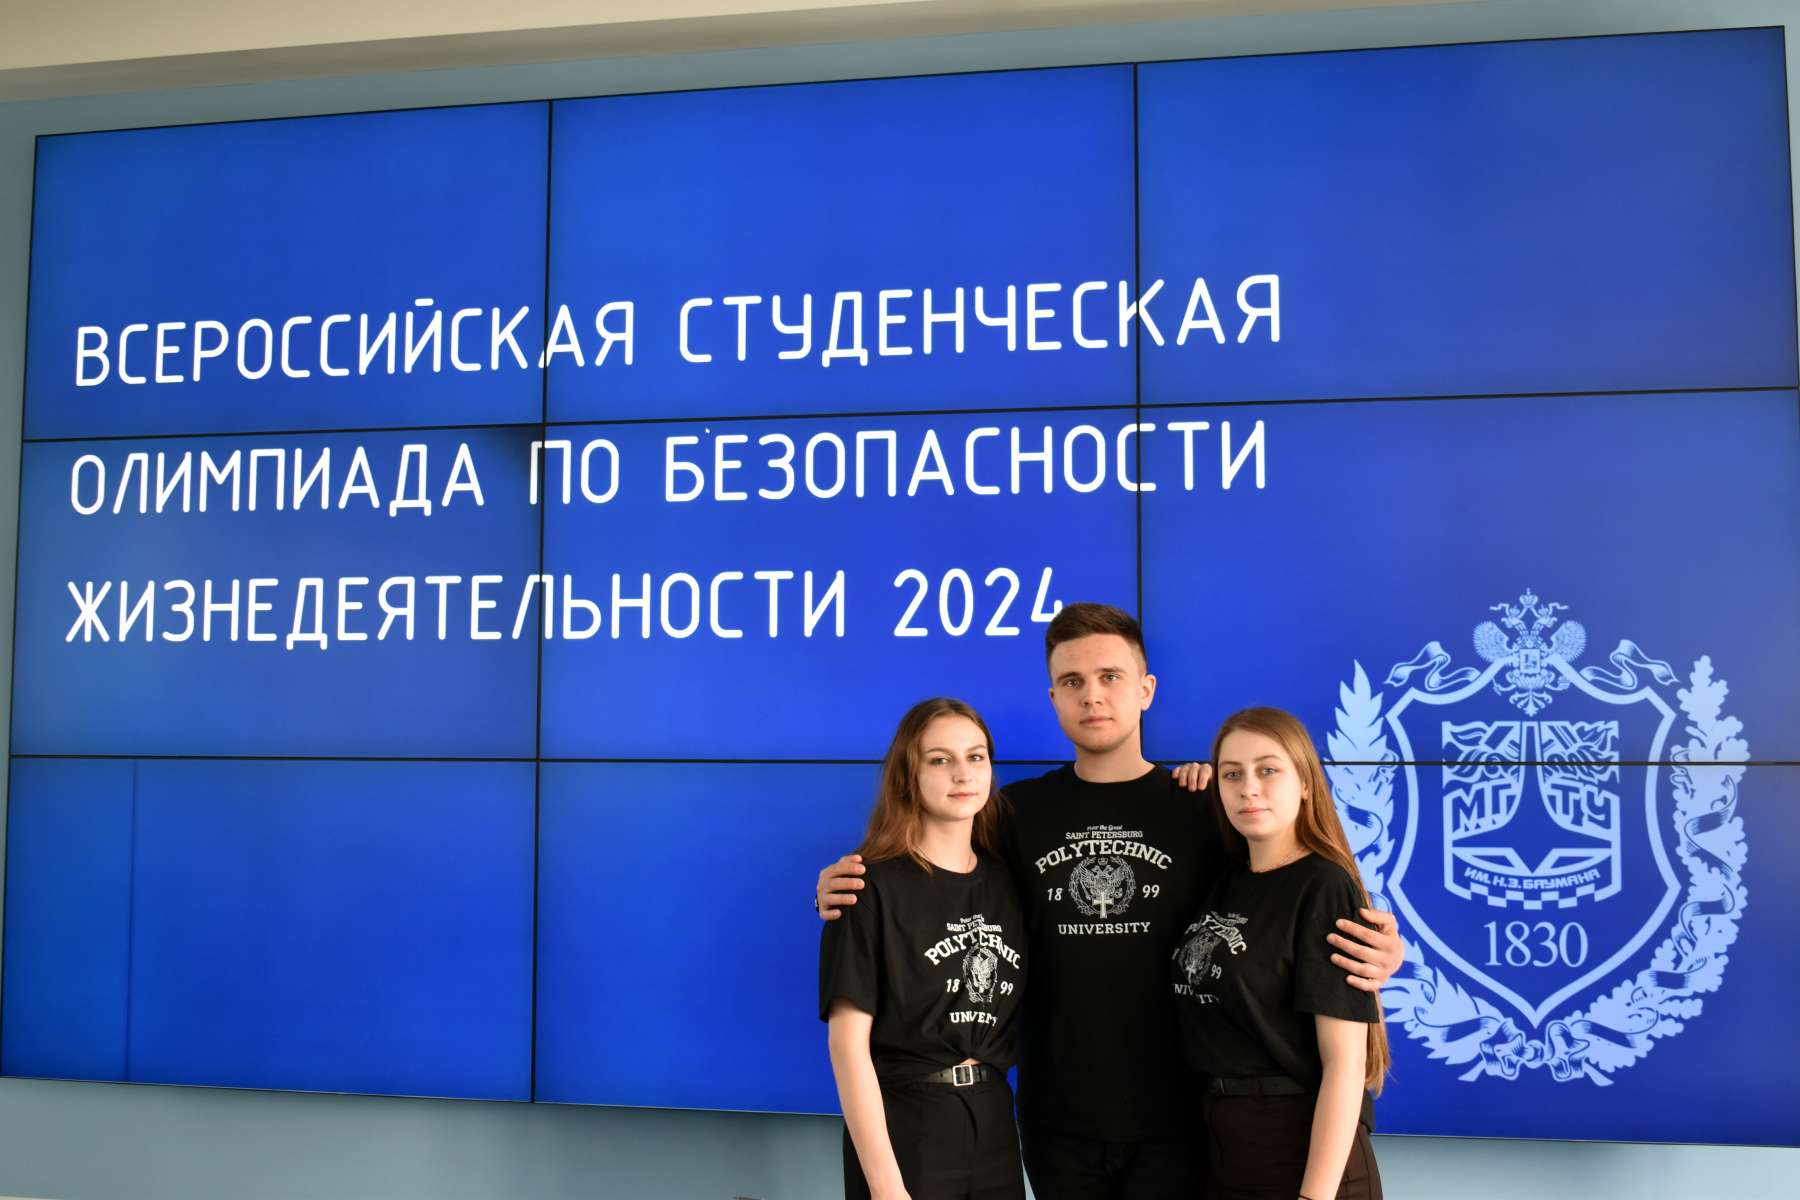 Студенты ИСИ заняли призовые места на Всероссийская студенческой олимпиаде по БЖД